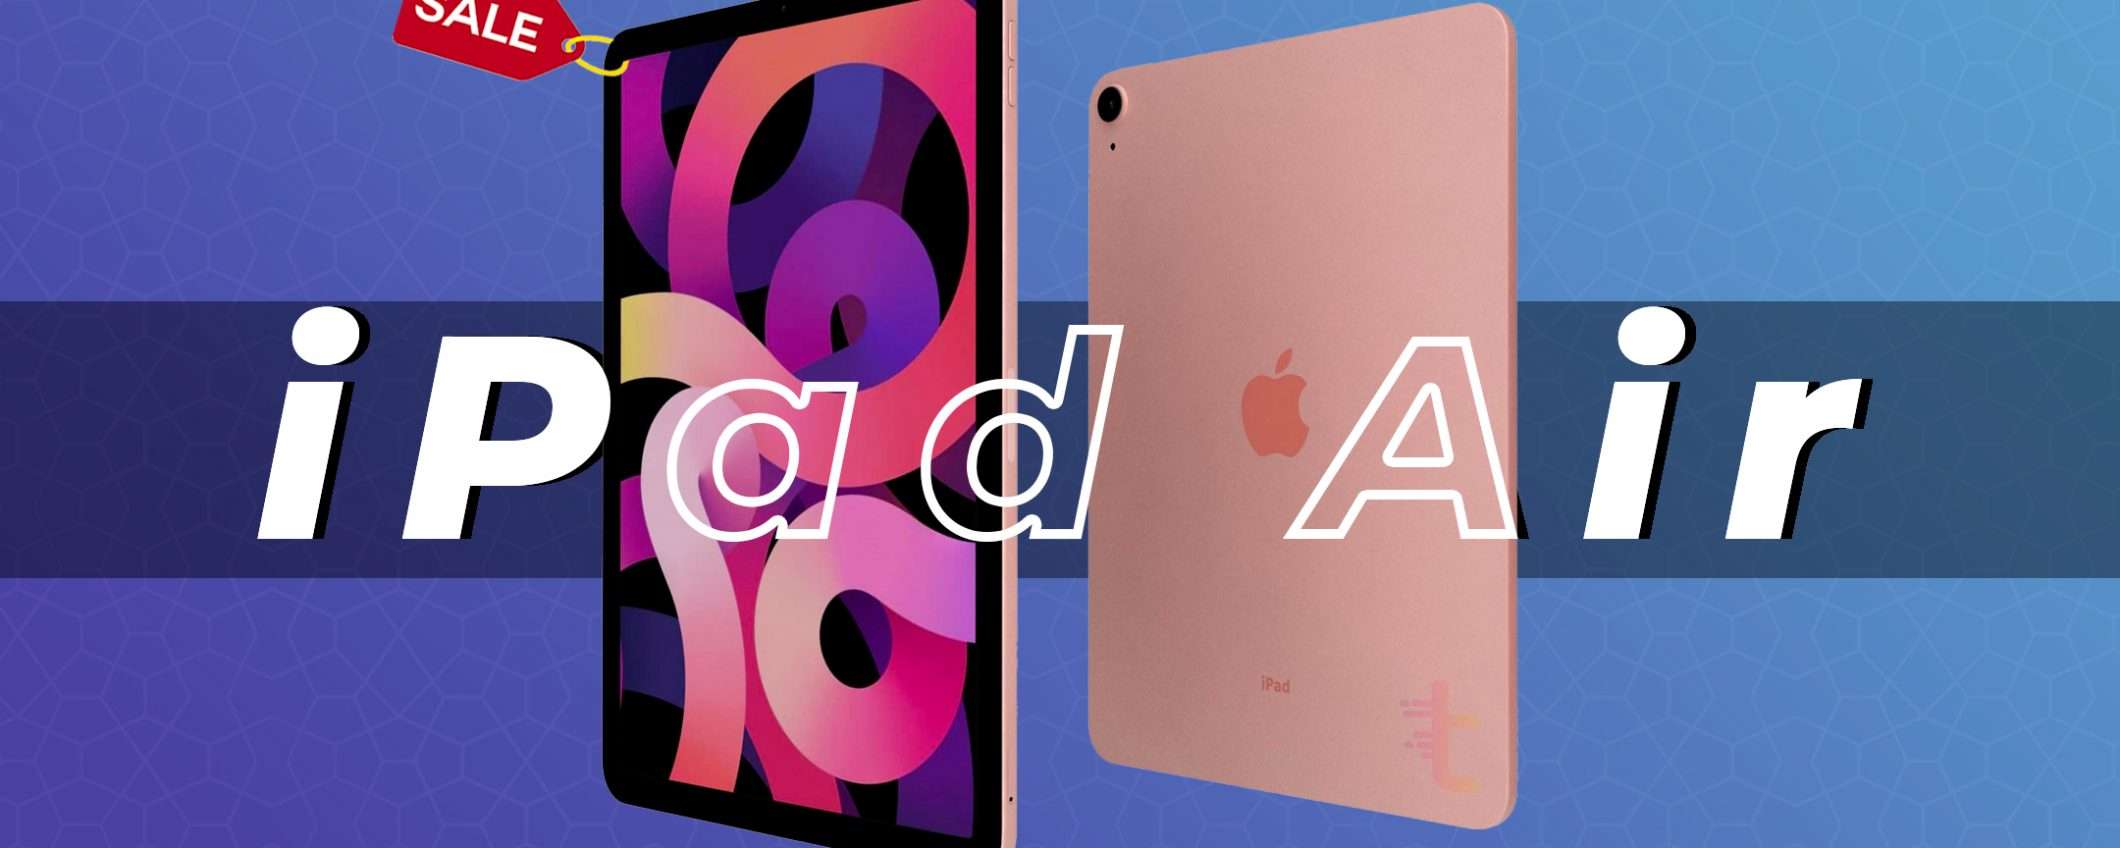 Apple iPad Air (64GB) scontato di 100€ | Offerte Amazon